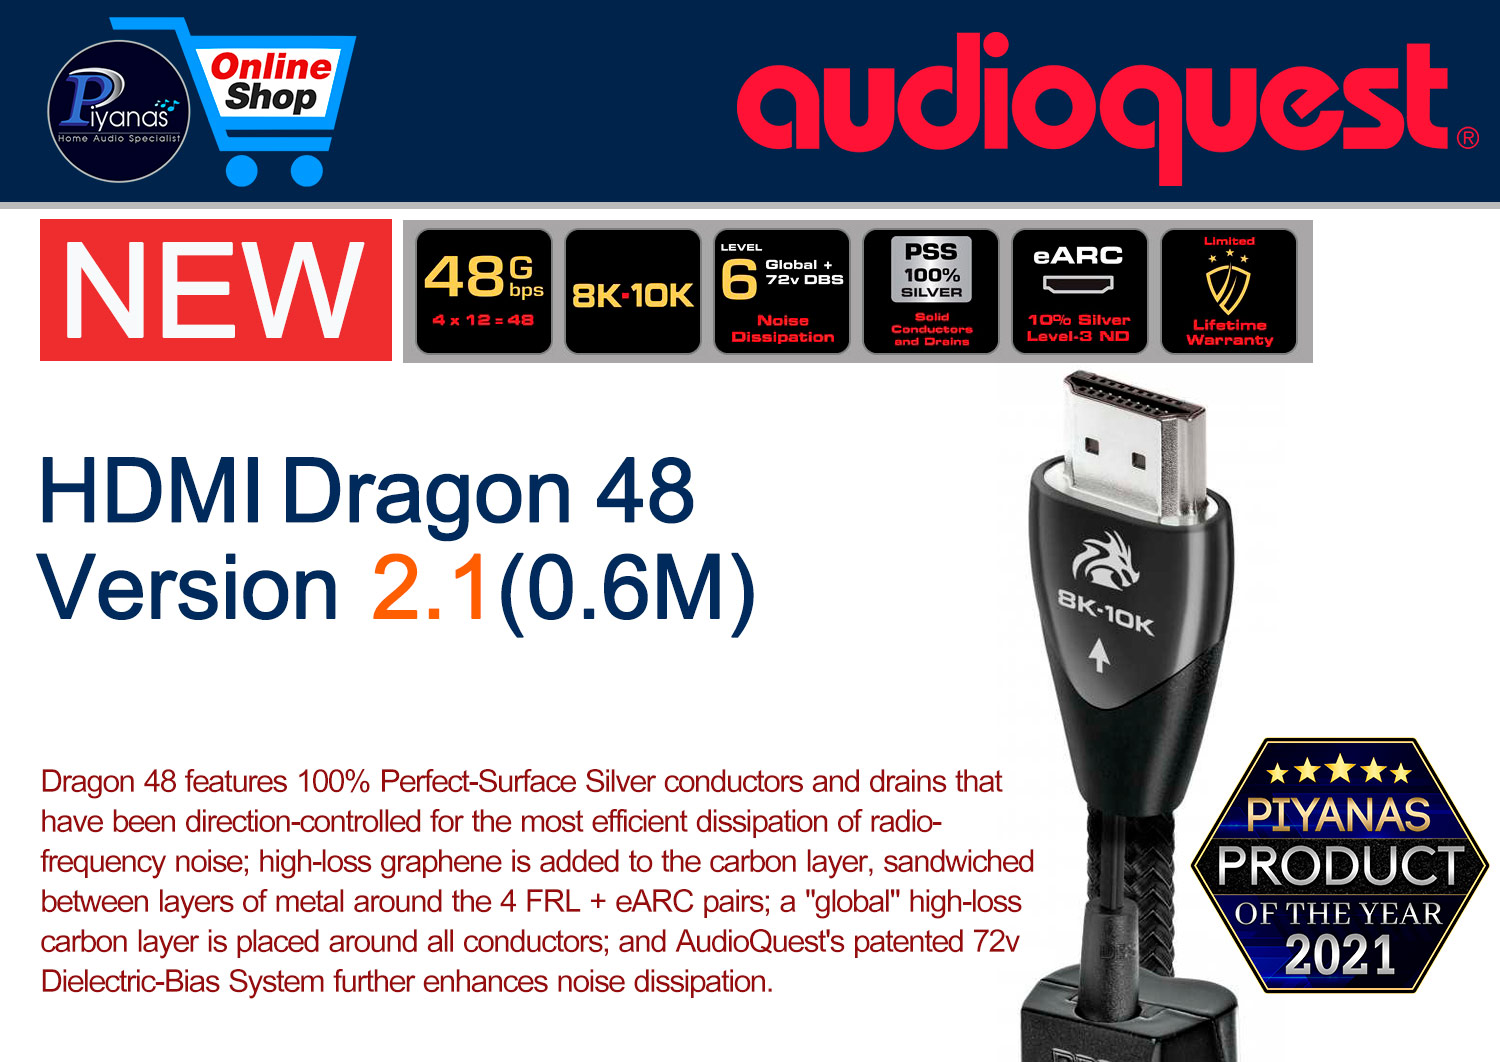 HDMI-Dragon 48 Version 2.1 (0.6M)